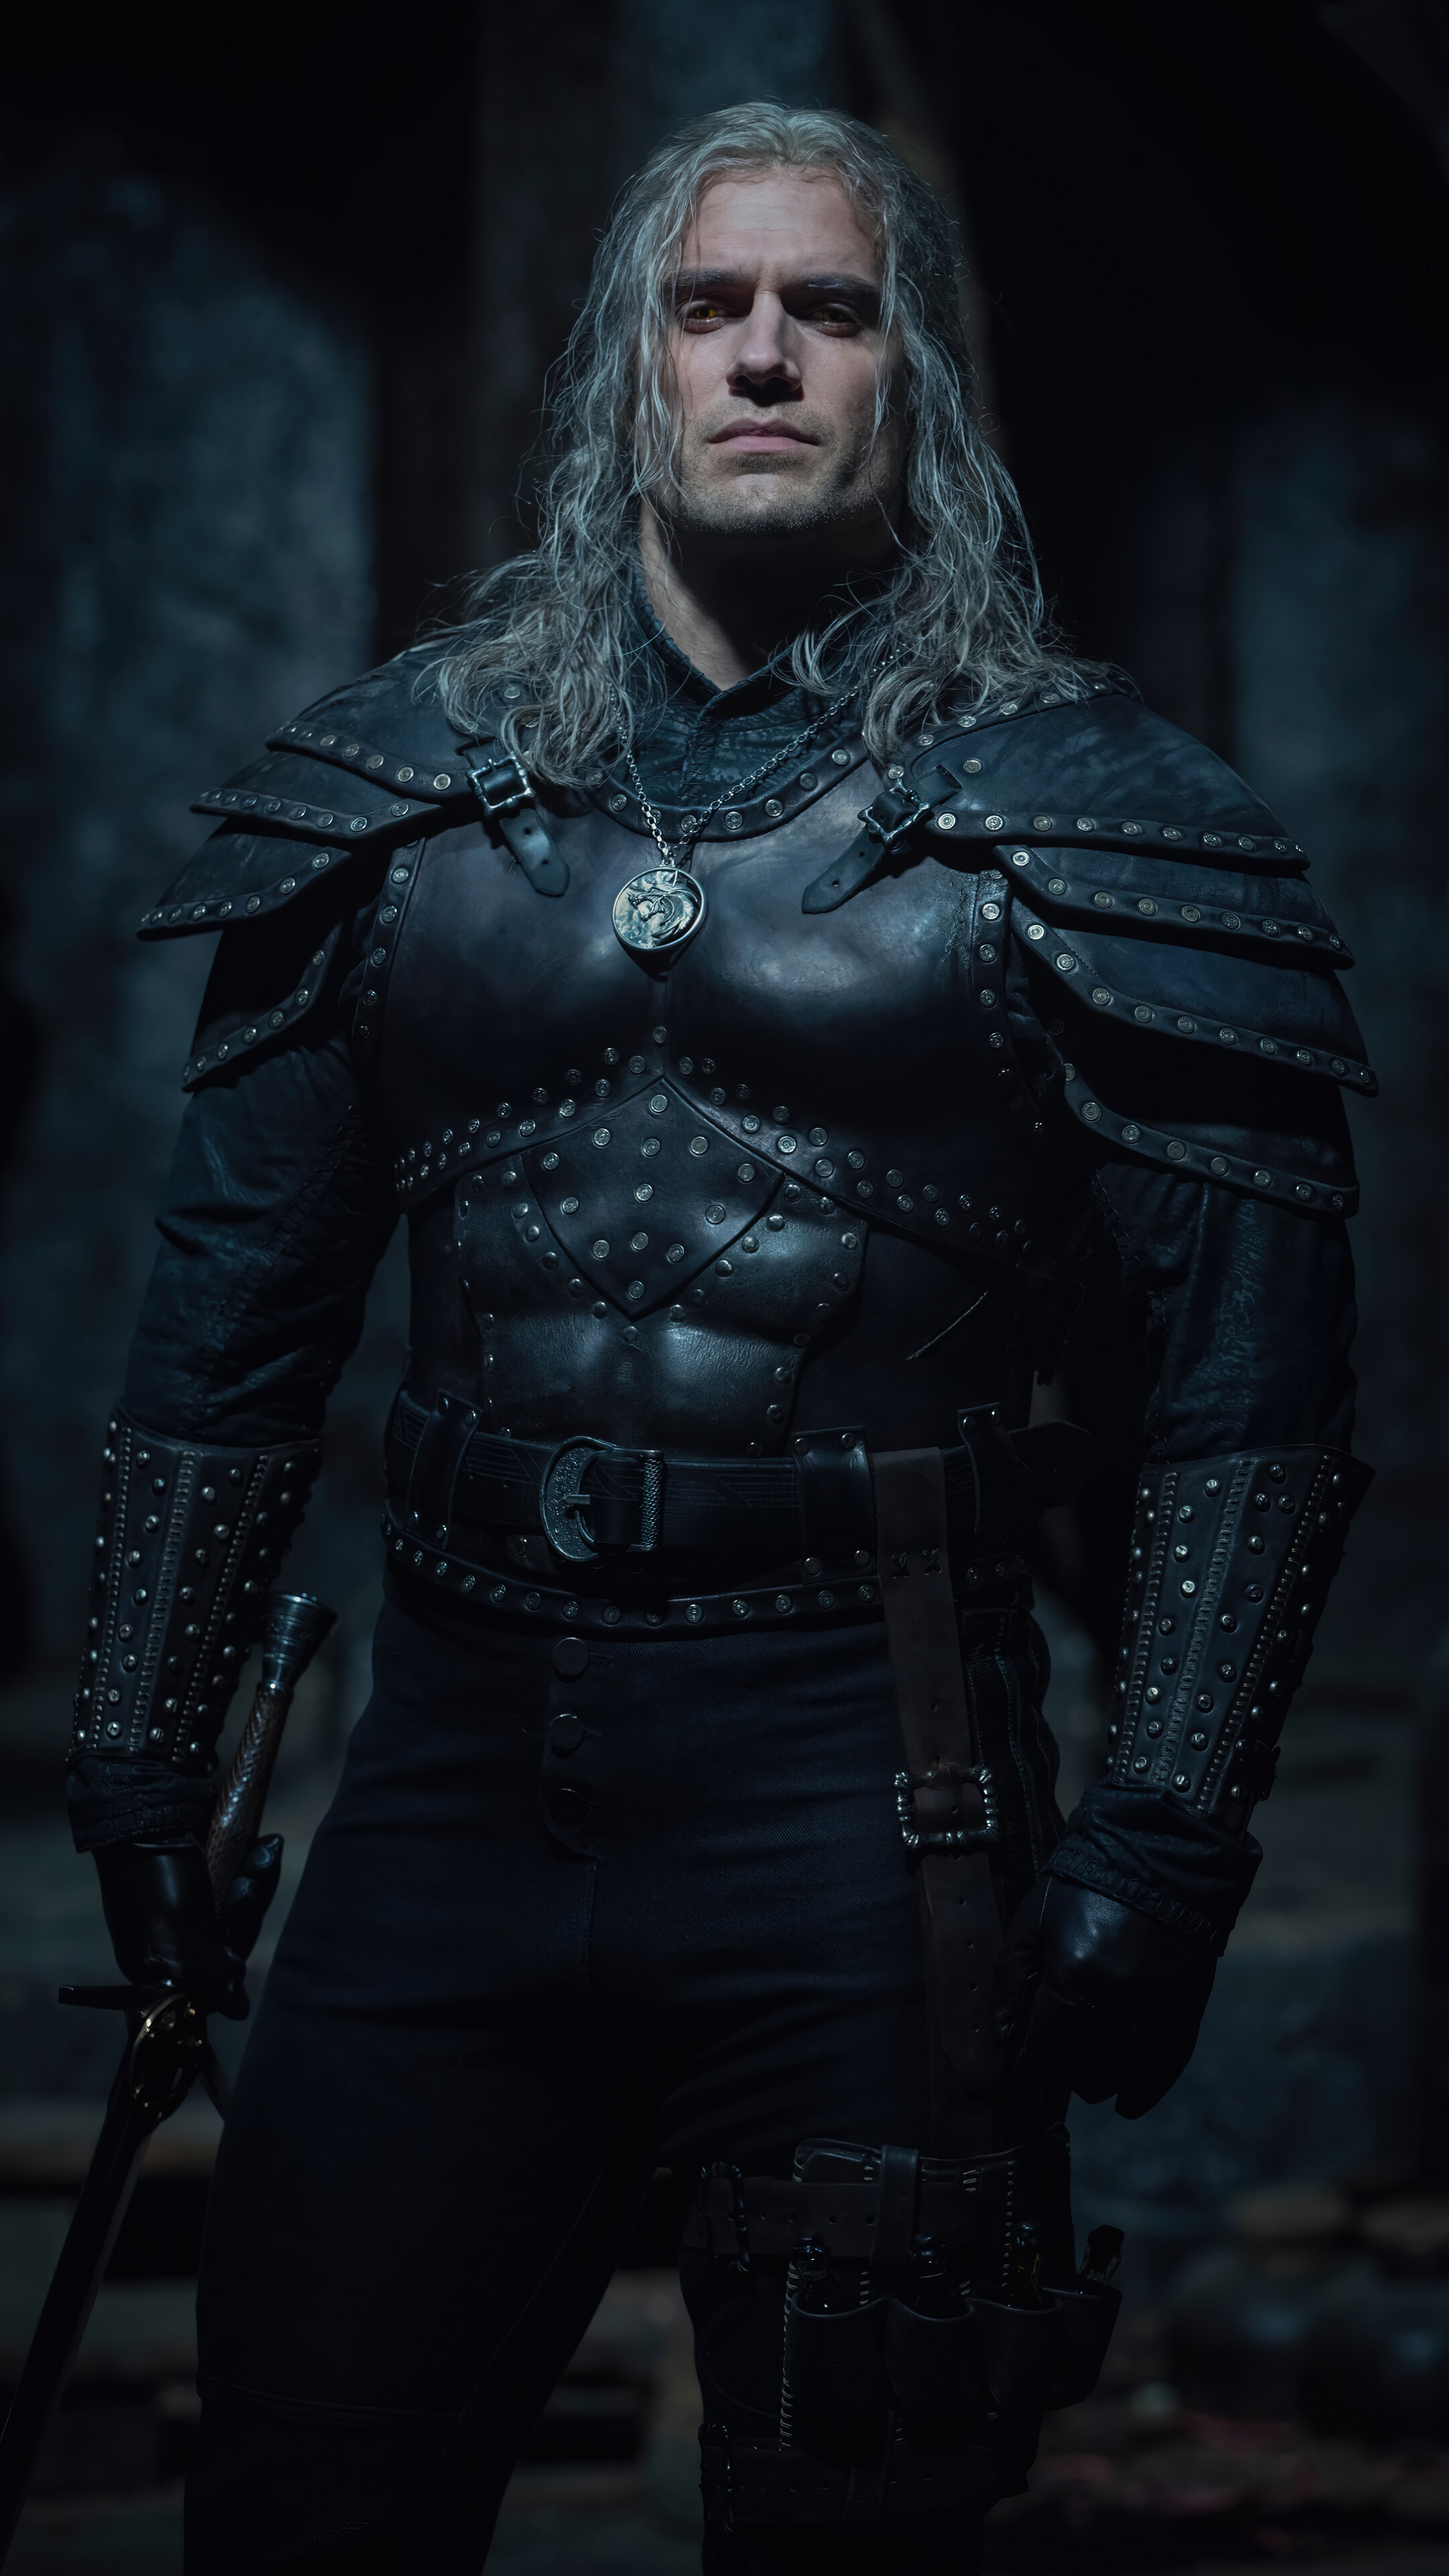 Bạn đang tìm kiếm một chương trình giải trí đầy thú vị? Hãy tải ngay The Witcher Season 2 Geralt Henry Cavill HD 4K miễn phí và cùng khám phá thế giới phù thủy đầy bí ẩn. Những cảnh quay tuyệt đẹp, âm nhạc hấp dẫn và diễn xuất tuyệt vời sẽ làm bạn không thể bỏ qua.